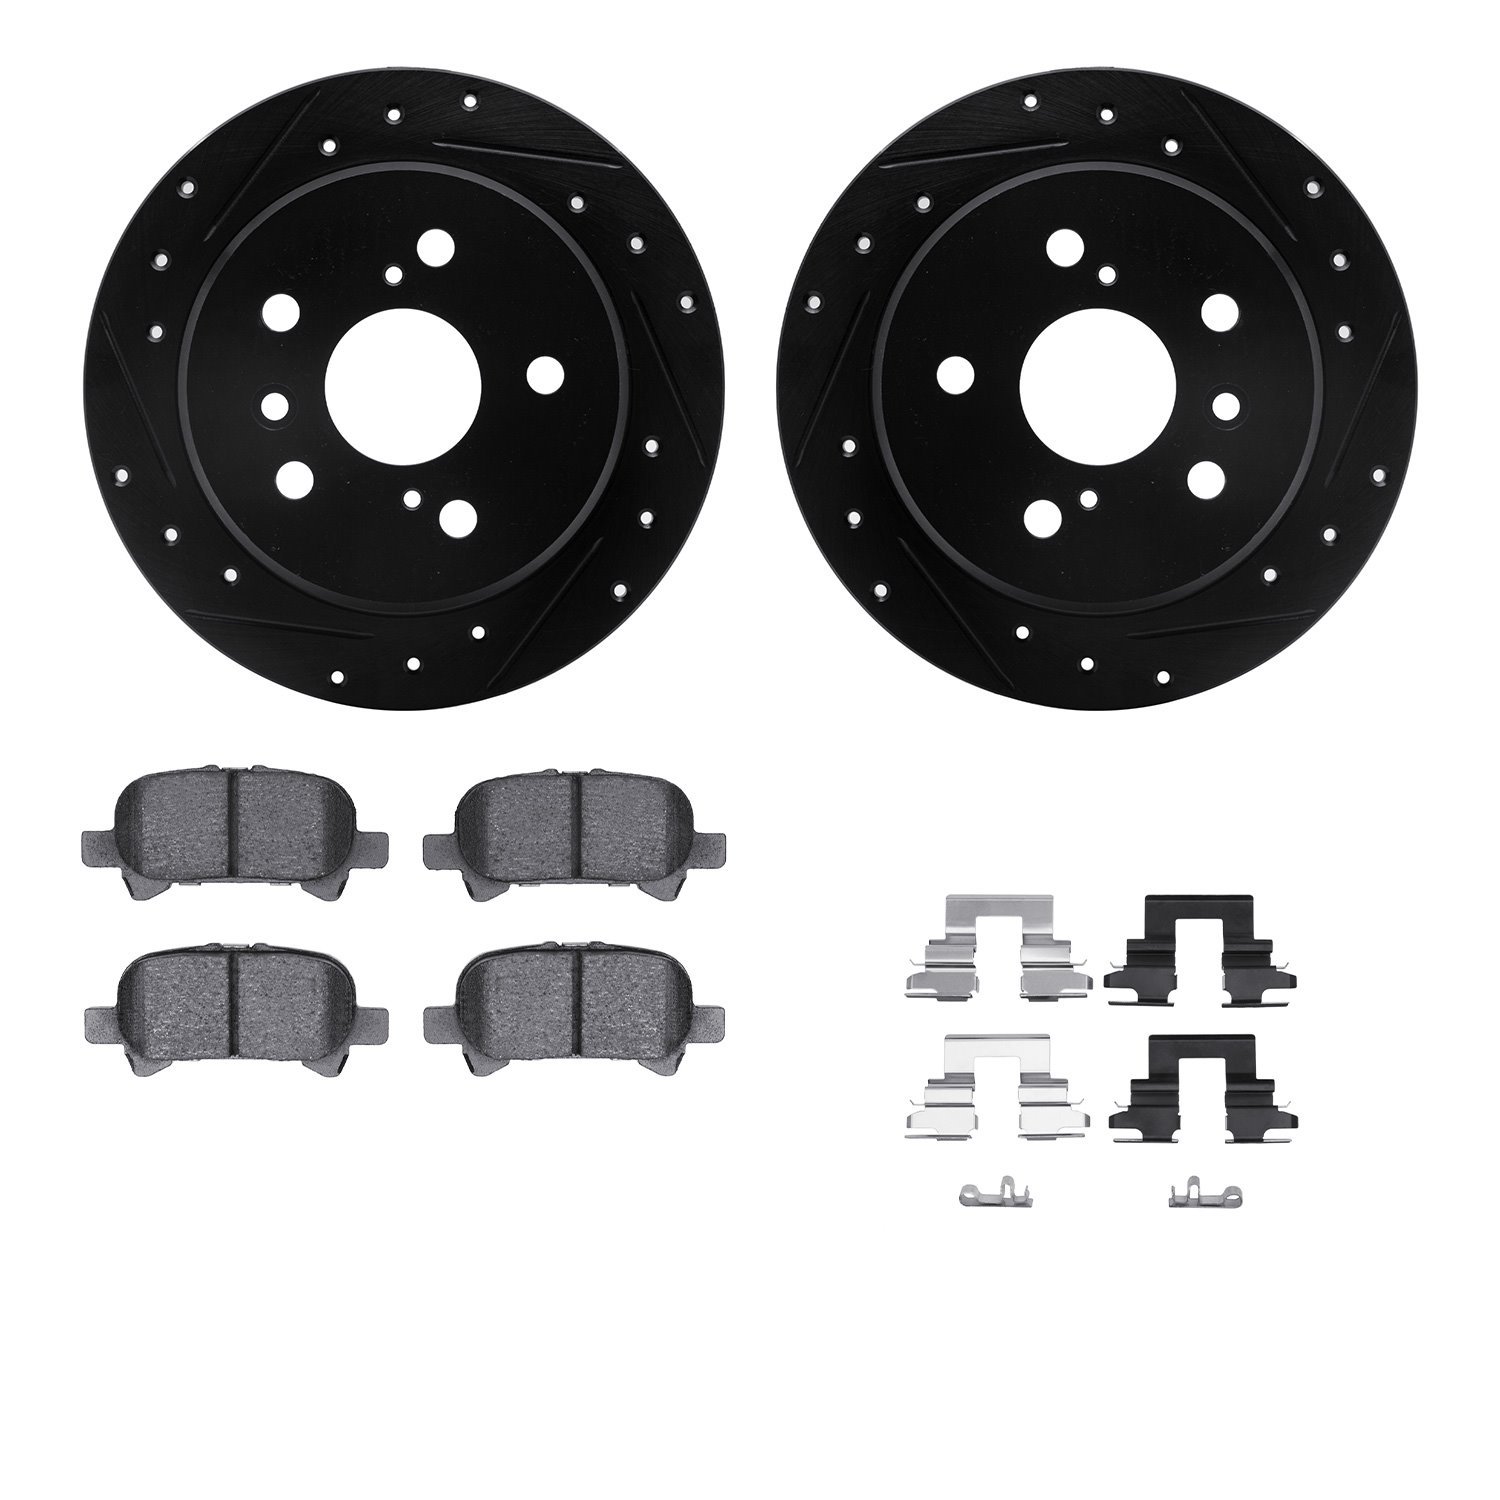 8312-76126 Drilled/Slotted Brake Rotors with 3000-Series Ceramic Brake Pads Kit & Hardware [Black], 2002-2008 Lexus/Toyota/Scion